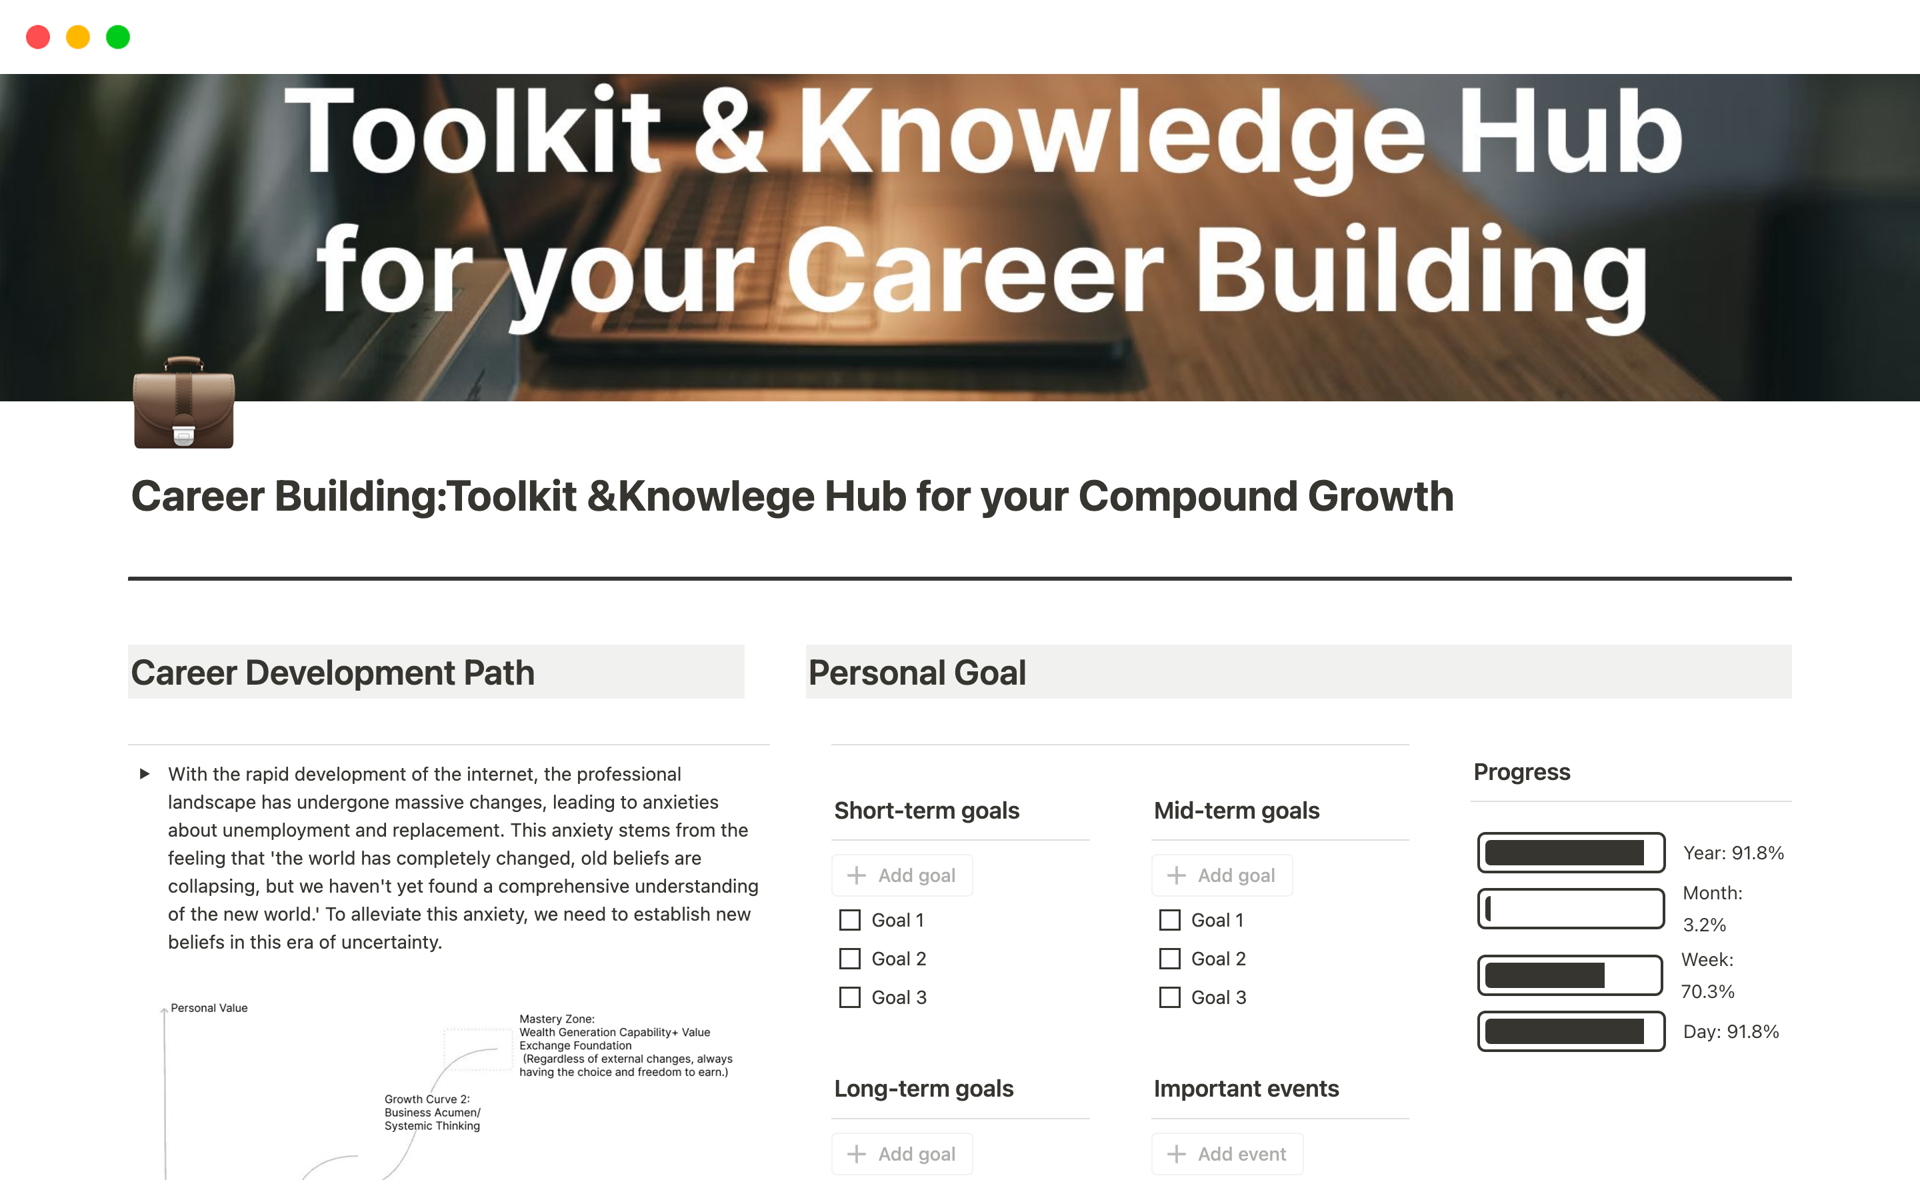 Uma prévia do modelo para Career Building:Toolkit & Knowledge Hub for Growth